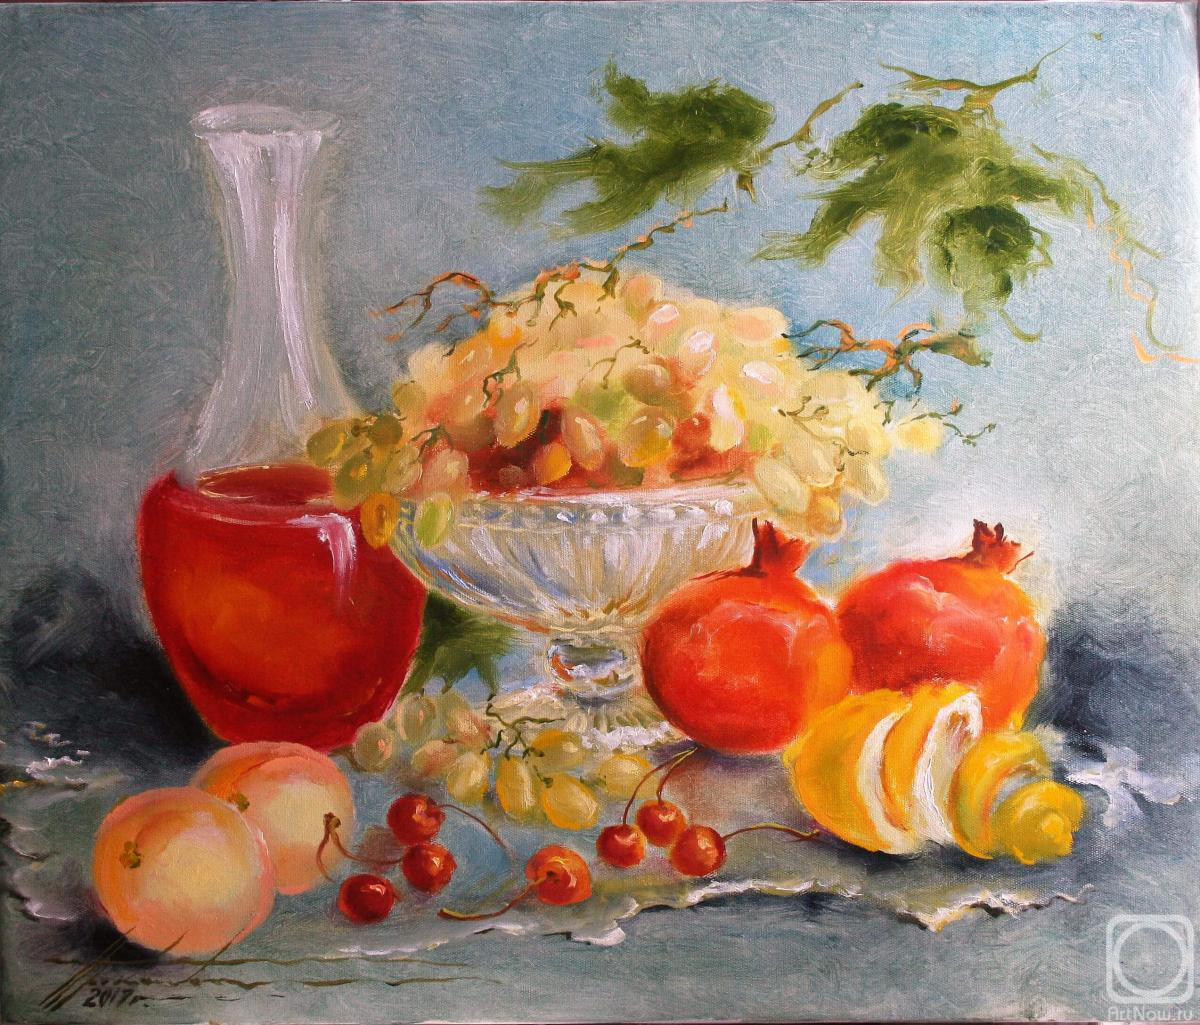 Prokaeva Galina. Pomegranate juice